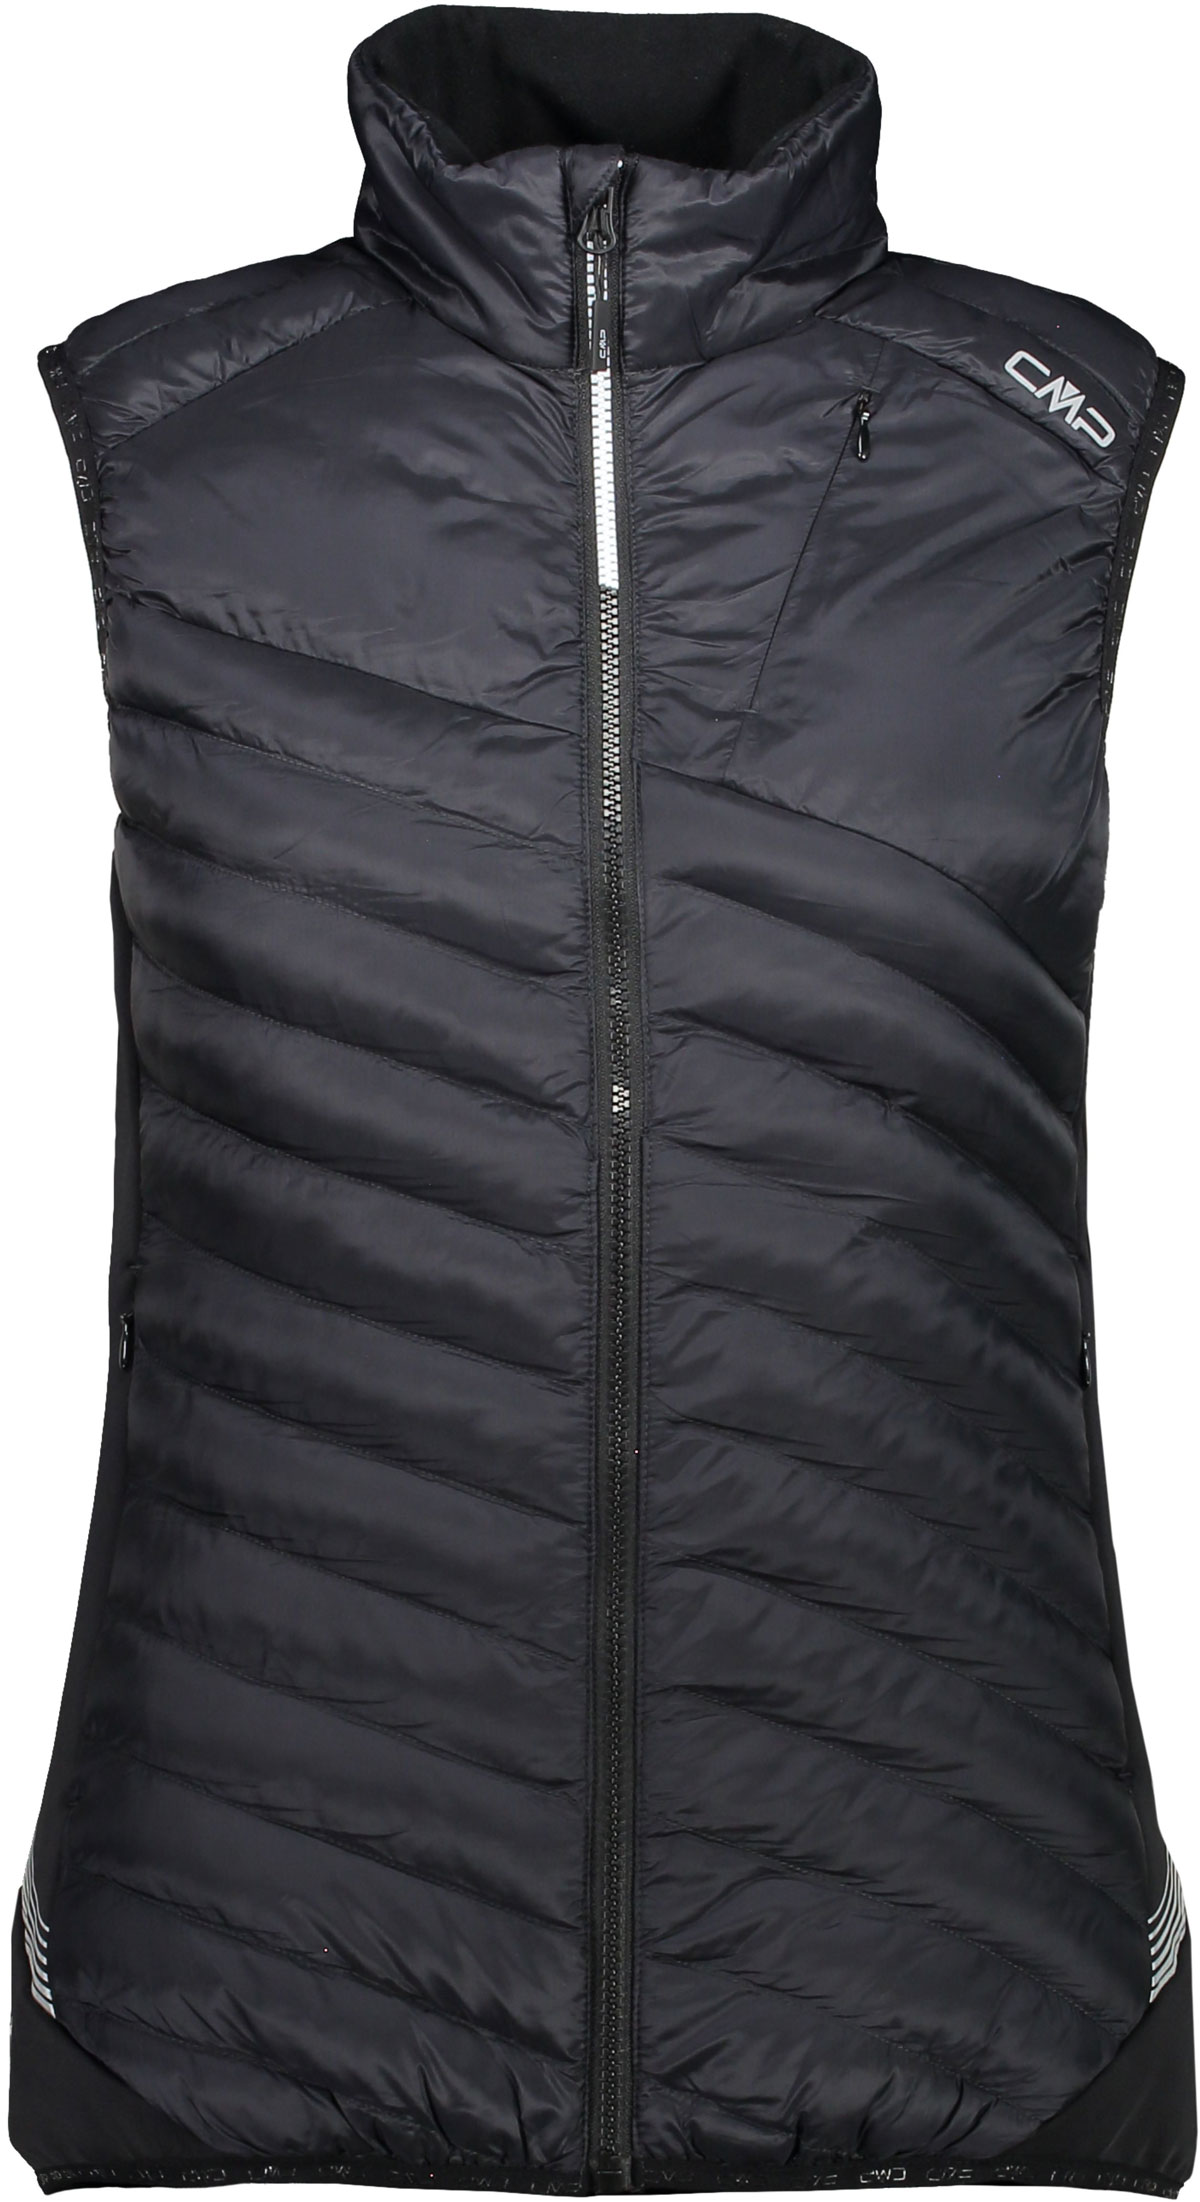 Women's winter vest